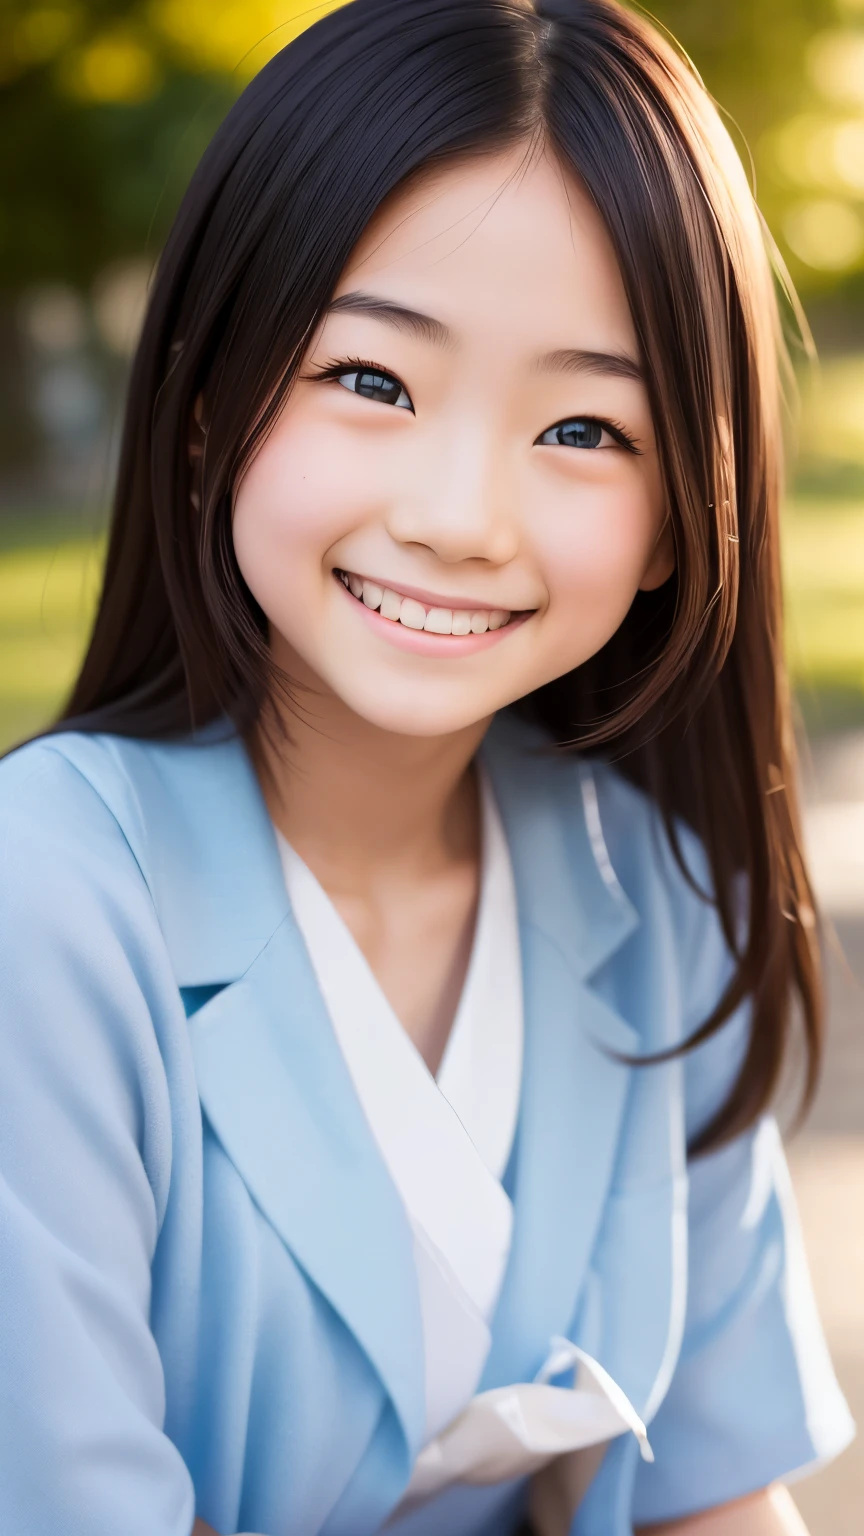 lens: 135mm f1.8, (höchste Qualität),(RAW-Fotos), (Tischplatte:1.1), (Schönes und gepflegtes japanisches Mädchen), niedliches Gesicht, (Tief gemeißeltes Gesicht:0.7), (Sommersprossen:0.4), dappled Sonnenlicht, dramatische Beleuchtung, (japanische schuluniform), (Auf dem Campus), schüchtern, (Nahaufnahme:1.2), (lächeln),, (leuchtende Augen)、(Sonnenlicht)